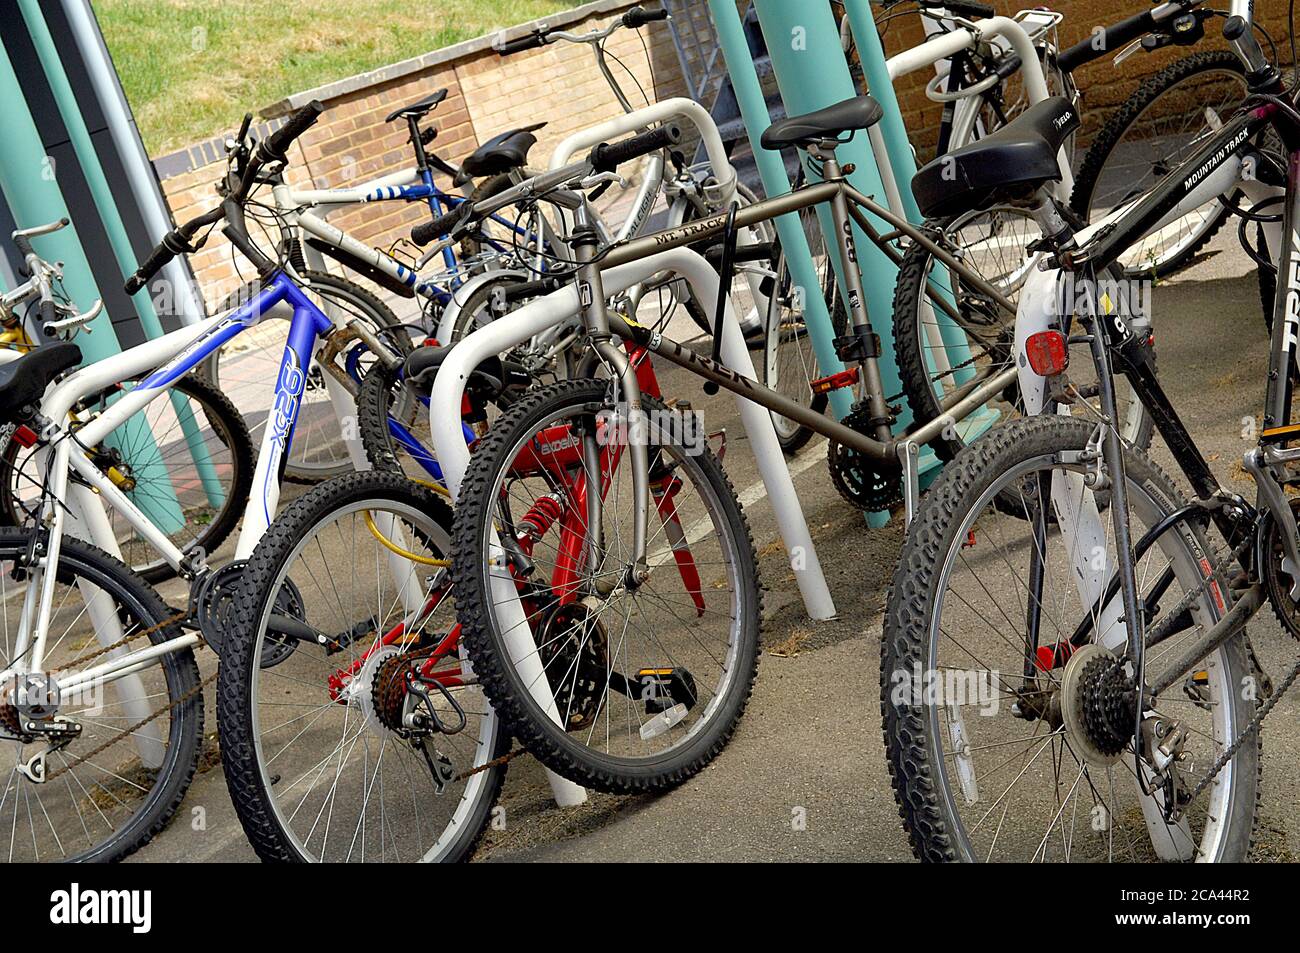 Mehrere versperrte Fahrräder auf einem Fahrradständer Stockfoto